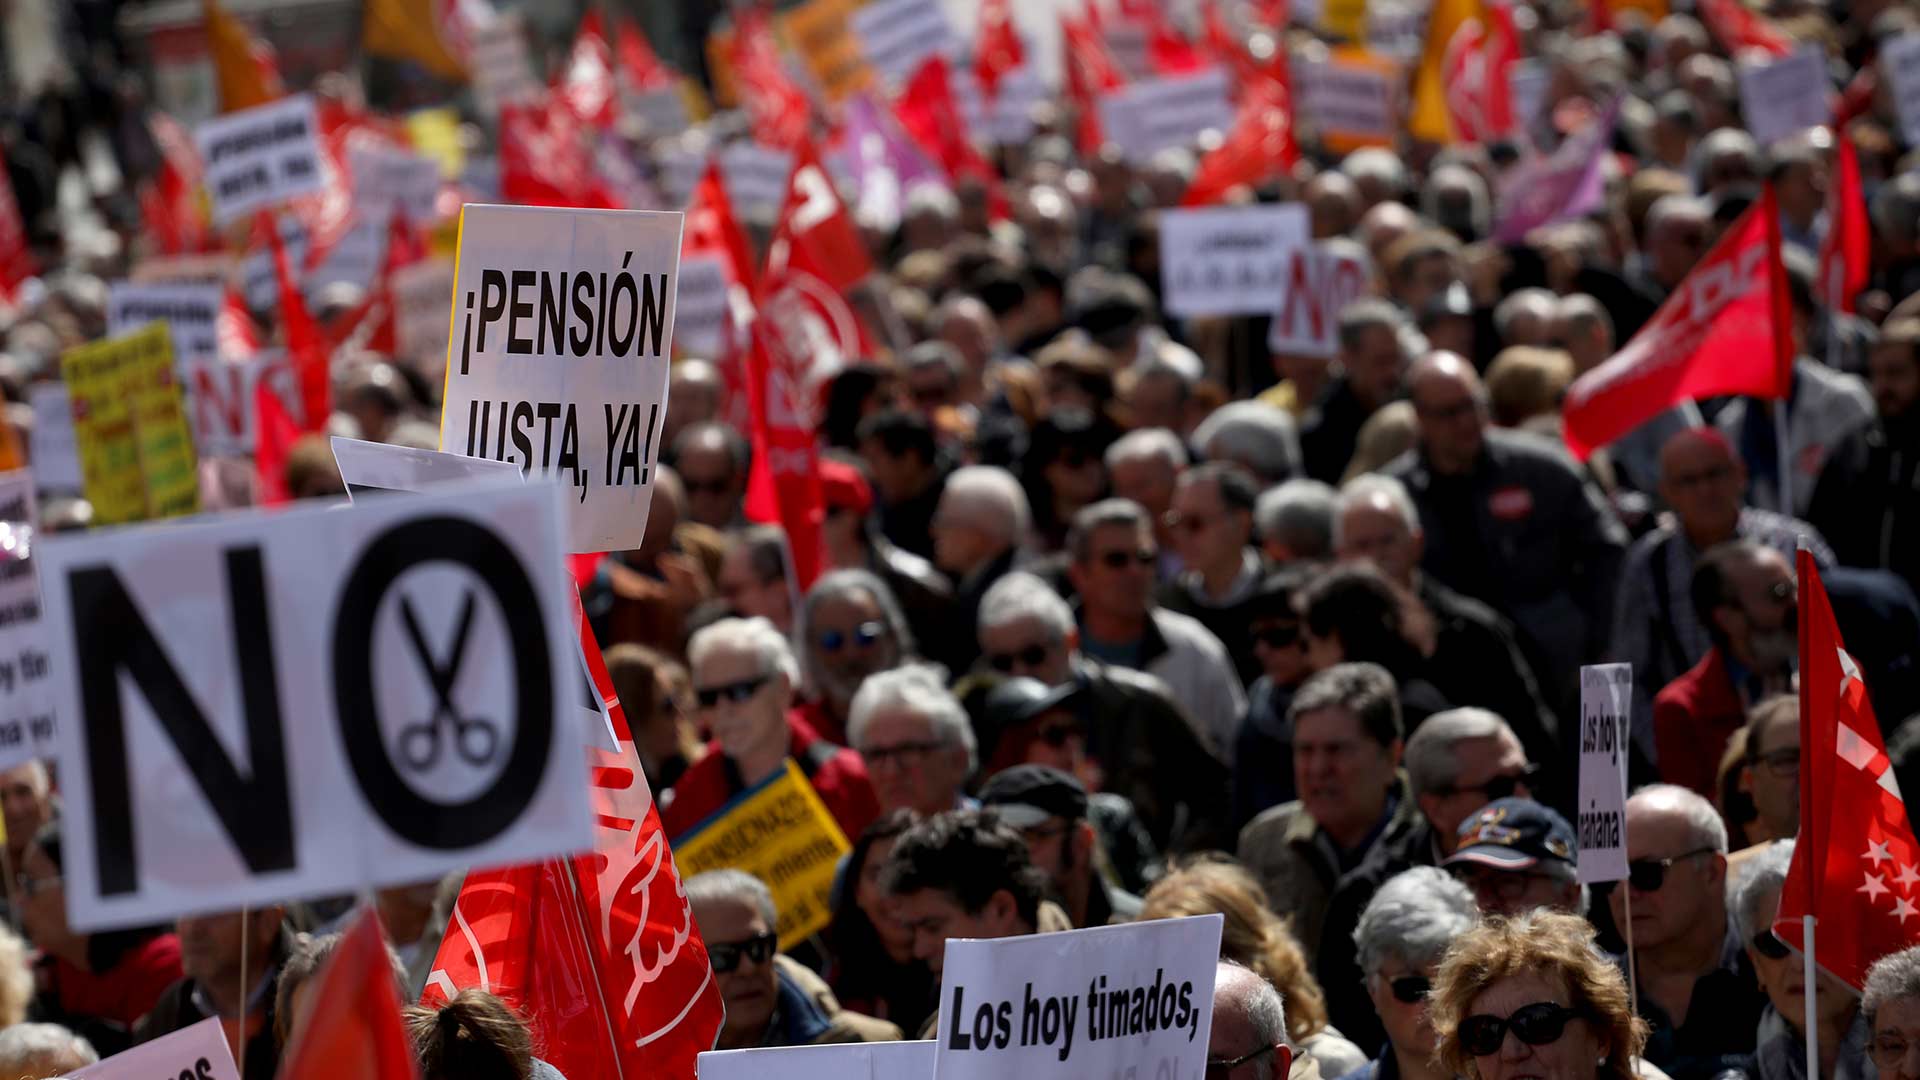 Los pensionistas vuelven a la calle para reivindicar "pensiones dignas"